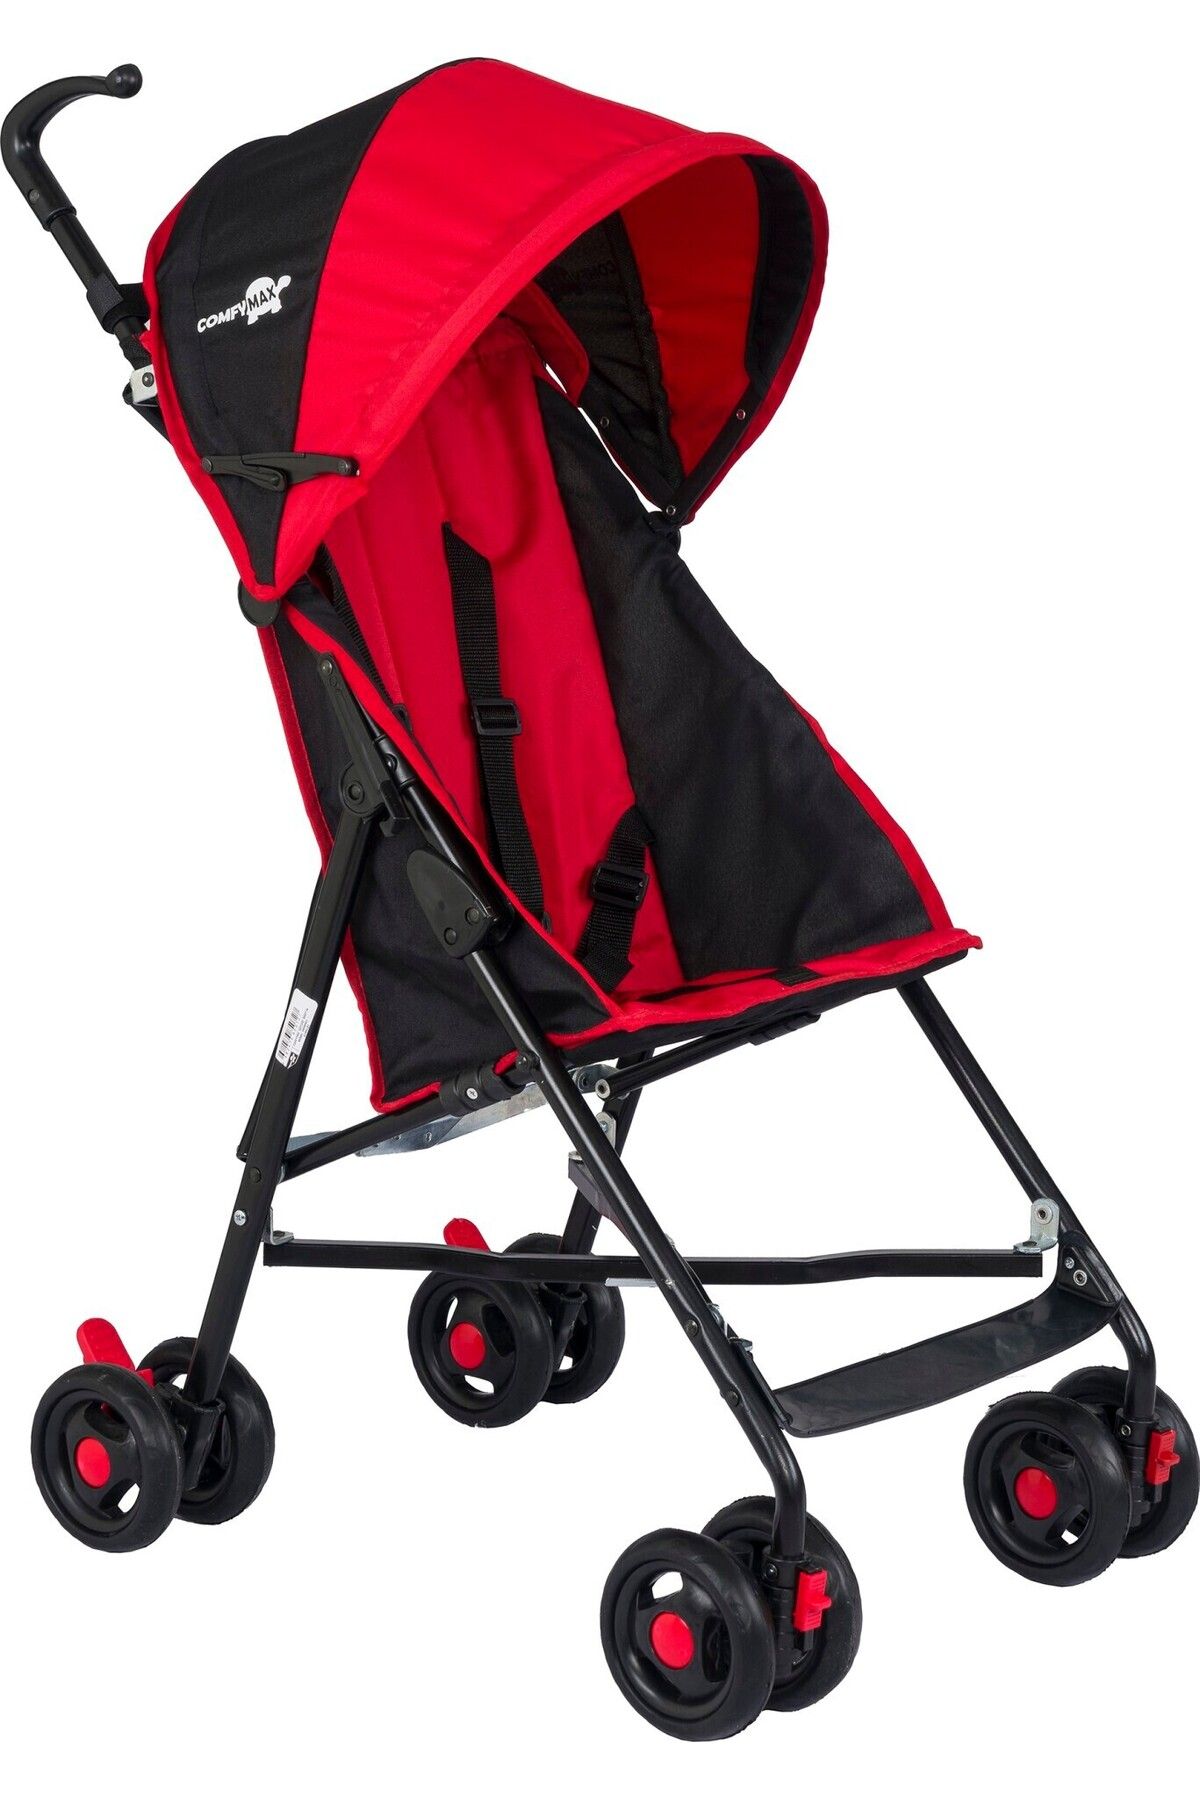 Comfymax II Baston Bebek Arabası - Kırmızı